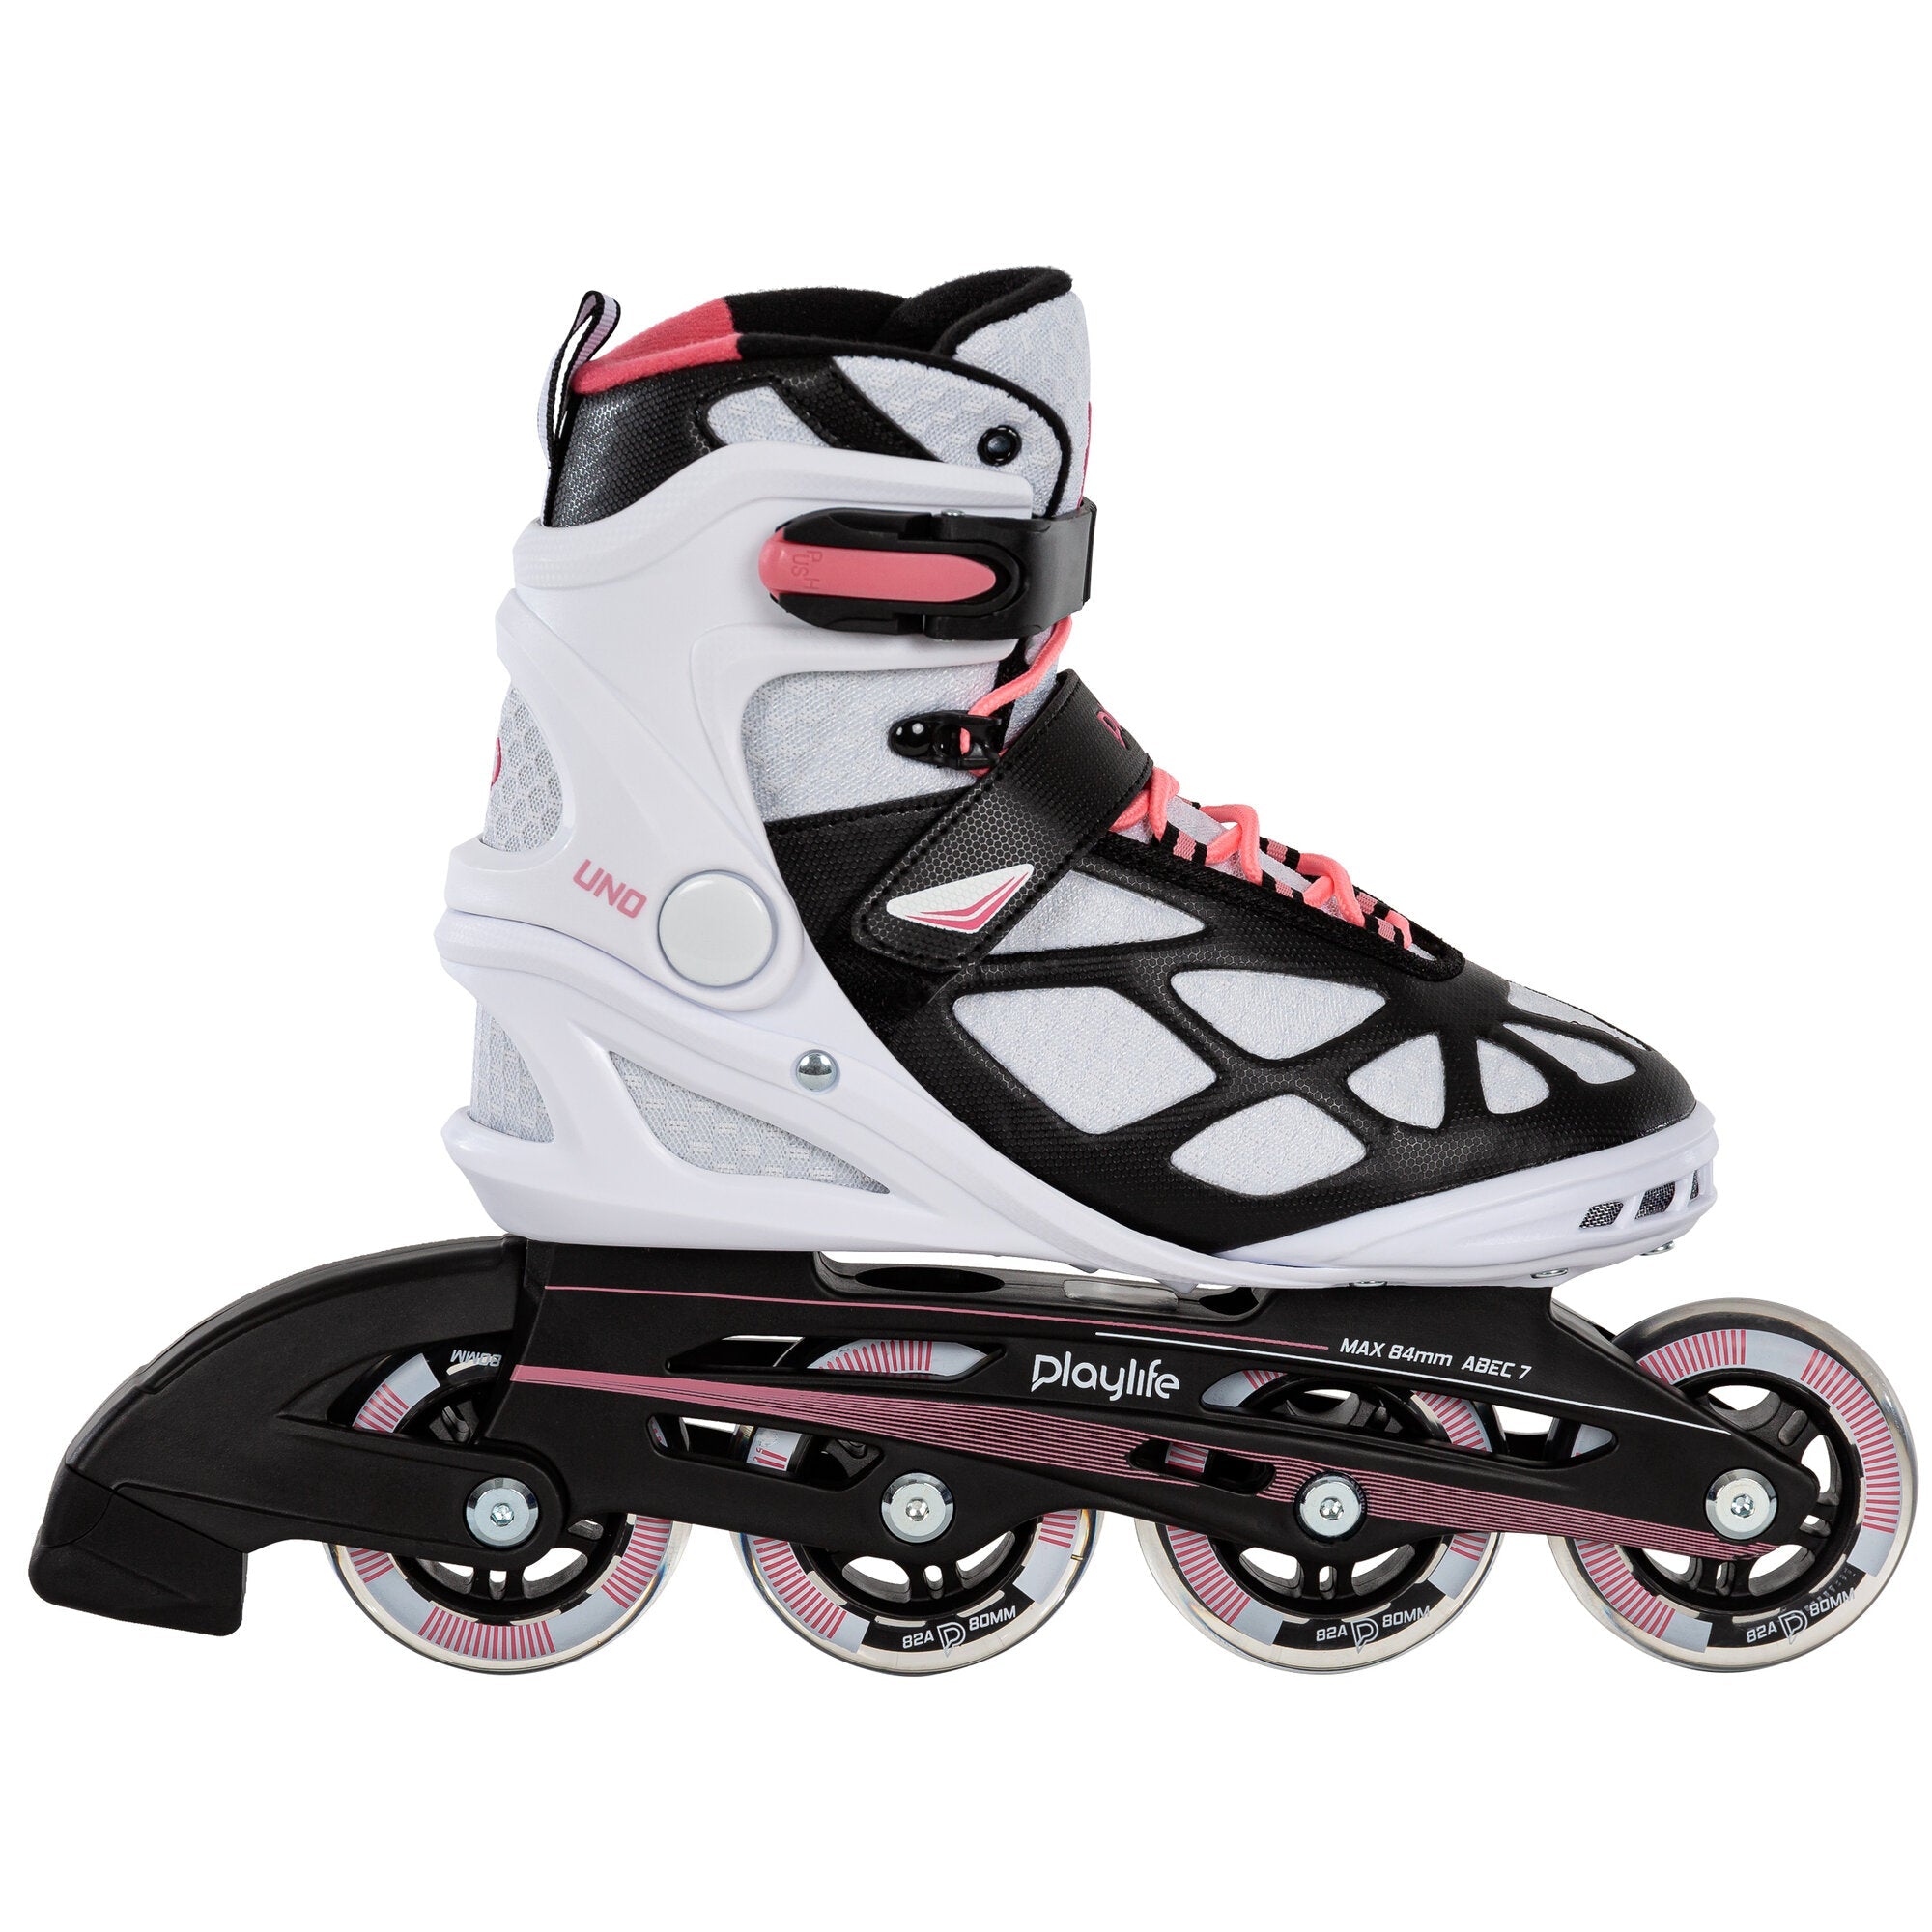 Playlife Uno 80 Skate - White/Pink Inline Rec Skates